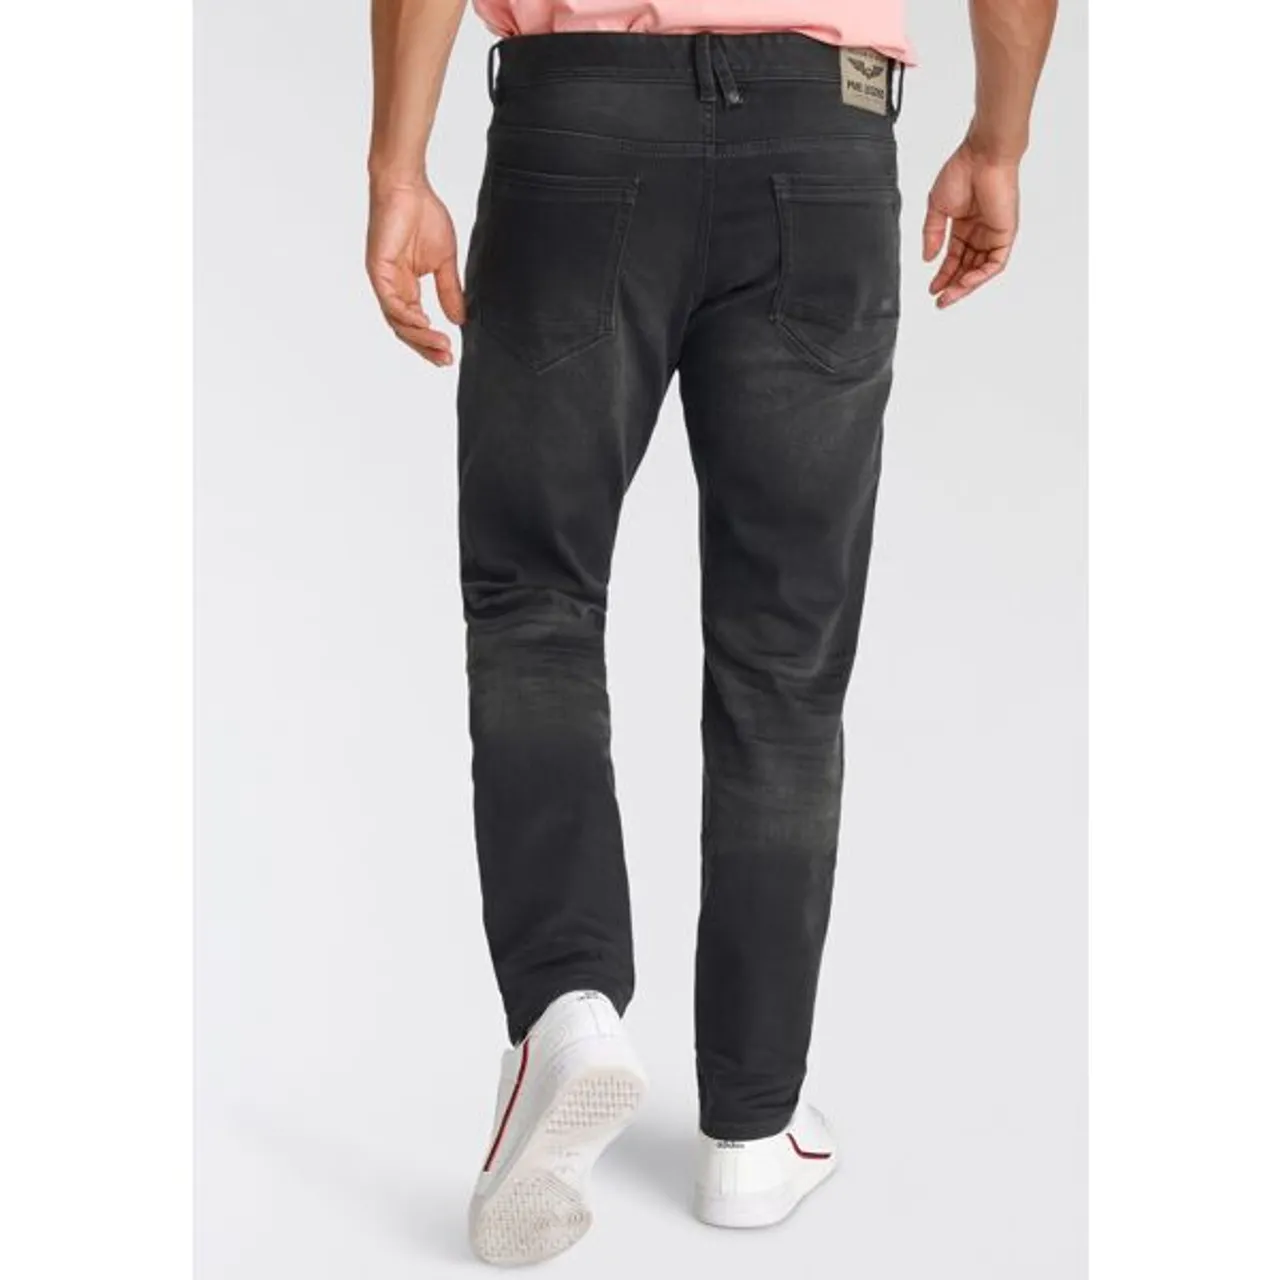 Slim-fit-Jeans PME LEGEND "Tailwheel" Gr. 34, Länge 36, schwarz (true soft black) Herren Jeans Slim Fit